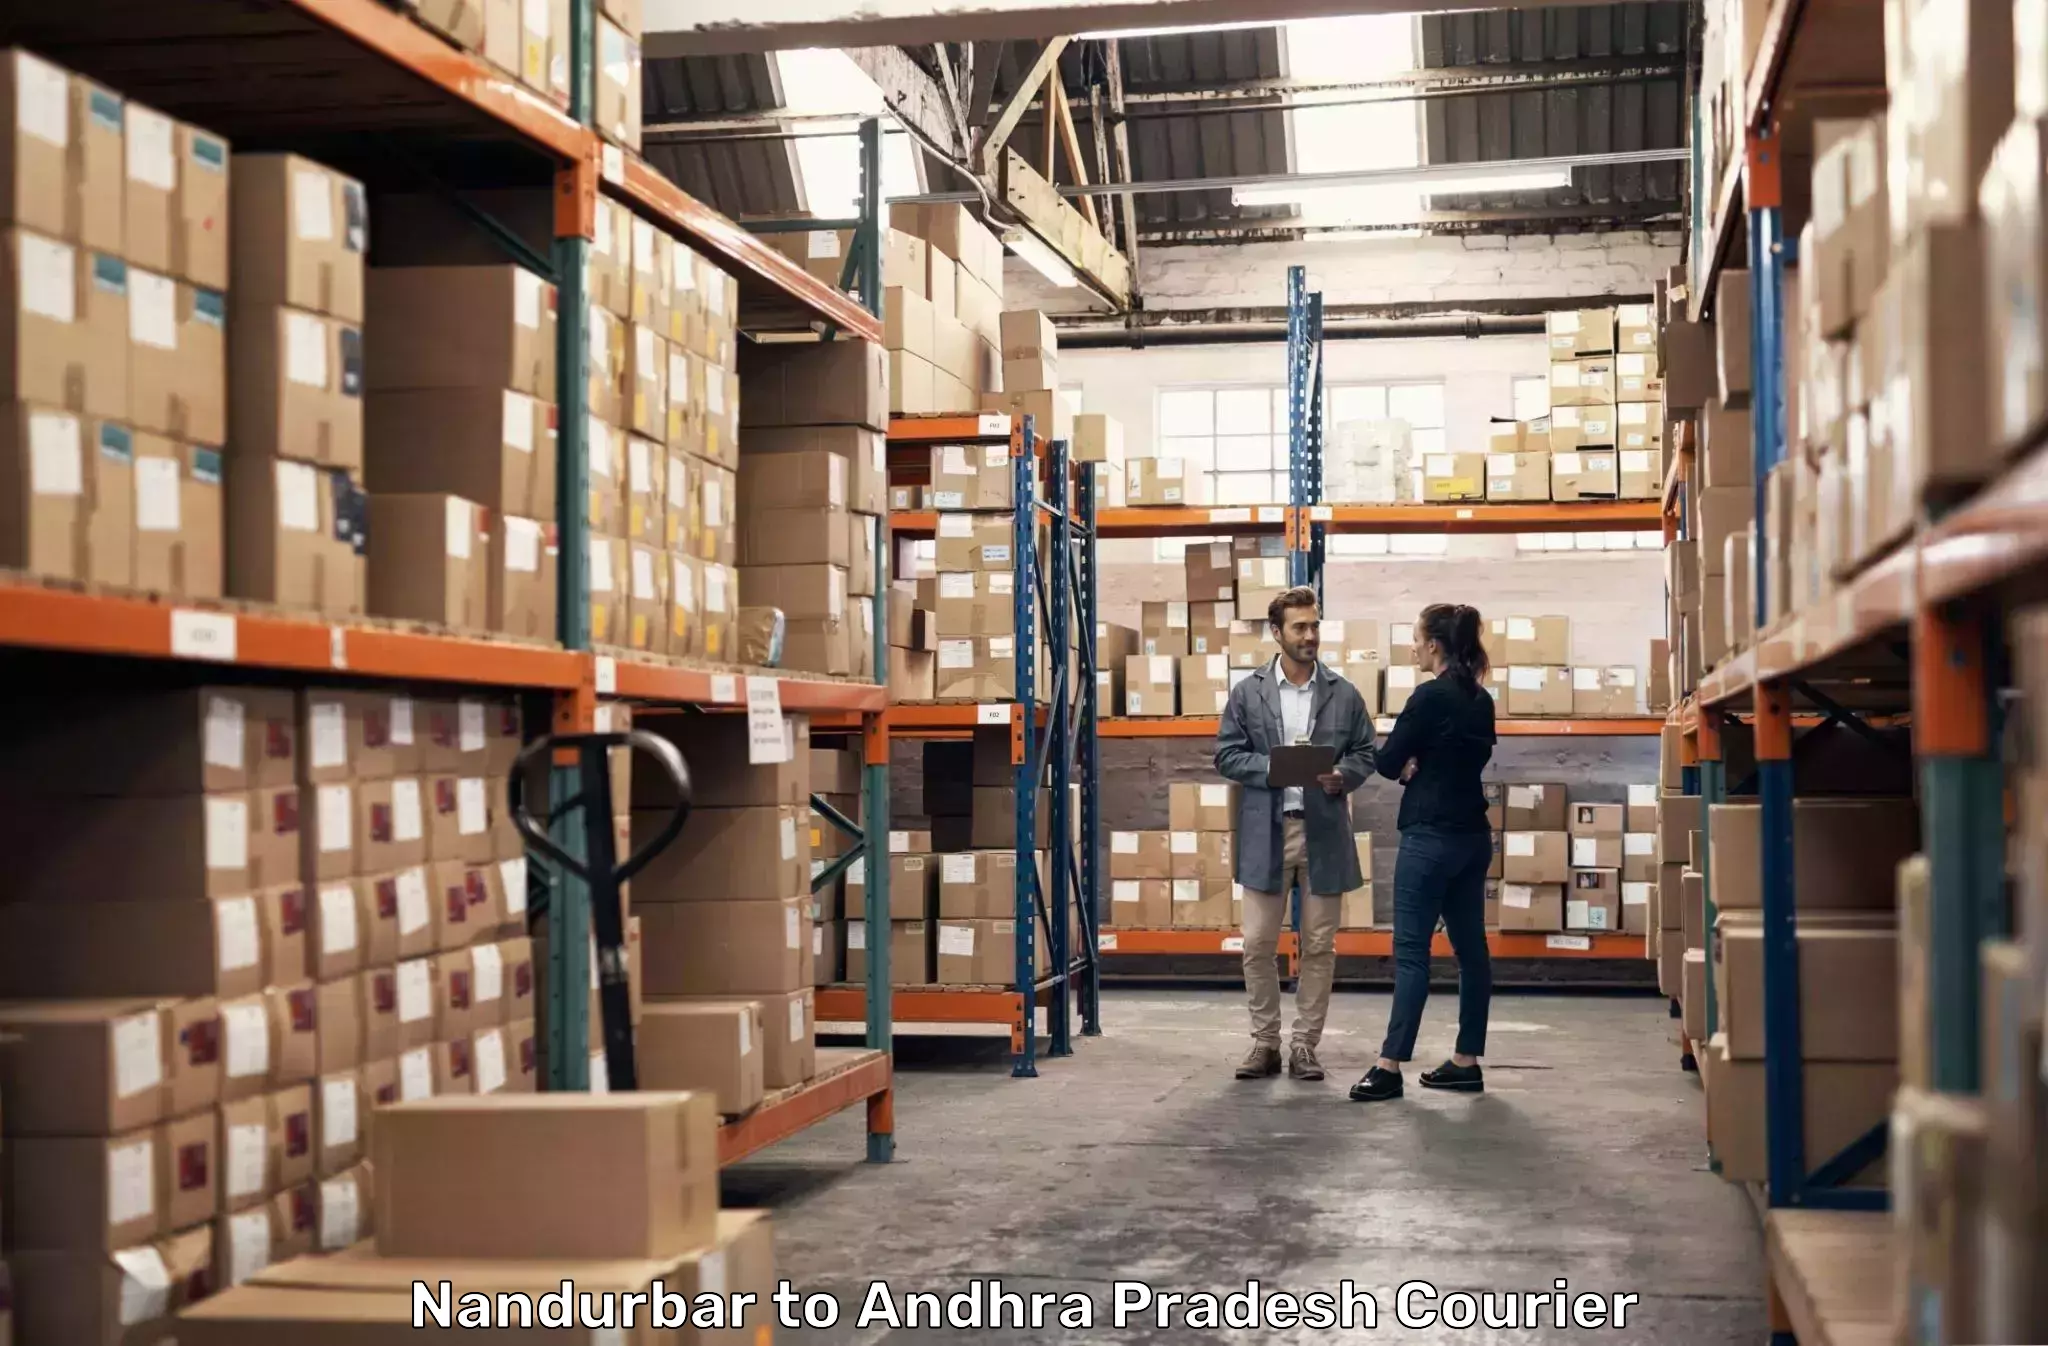 Express logistics providers Nandurbar to Palamaner